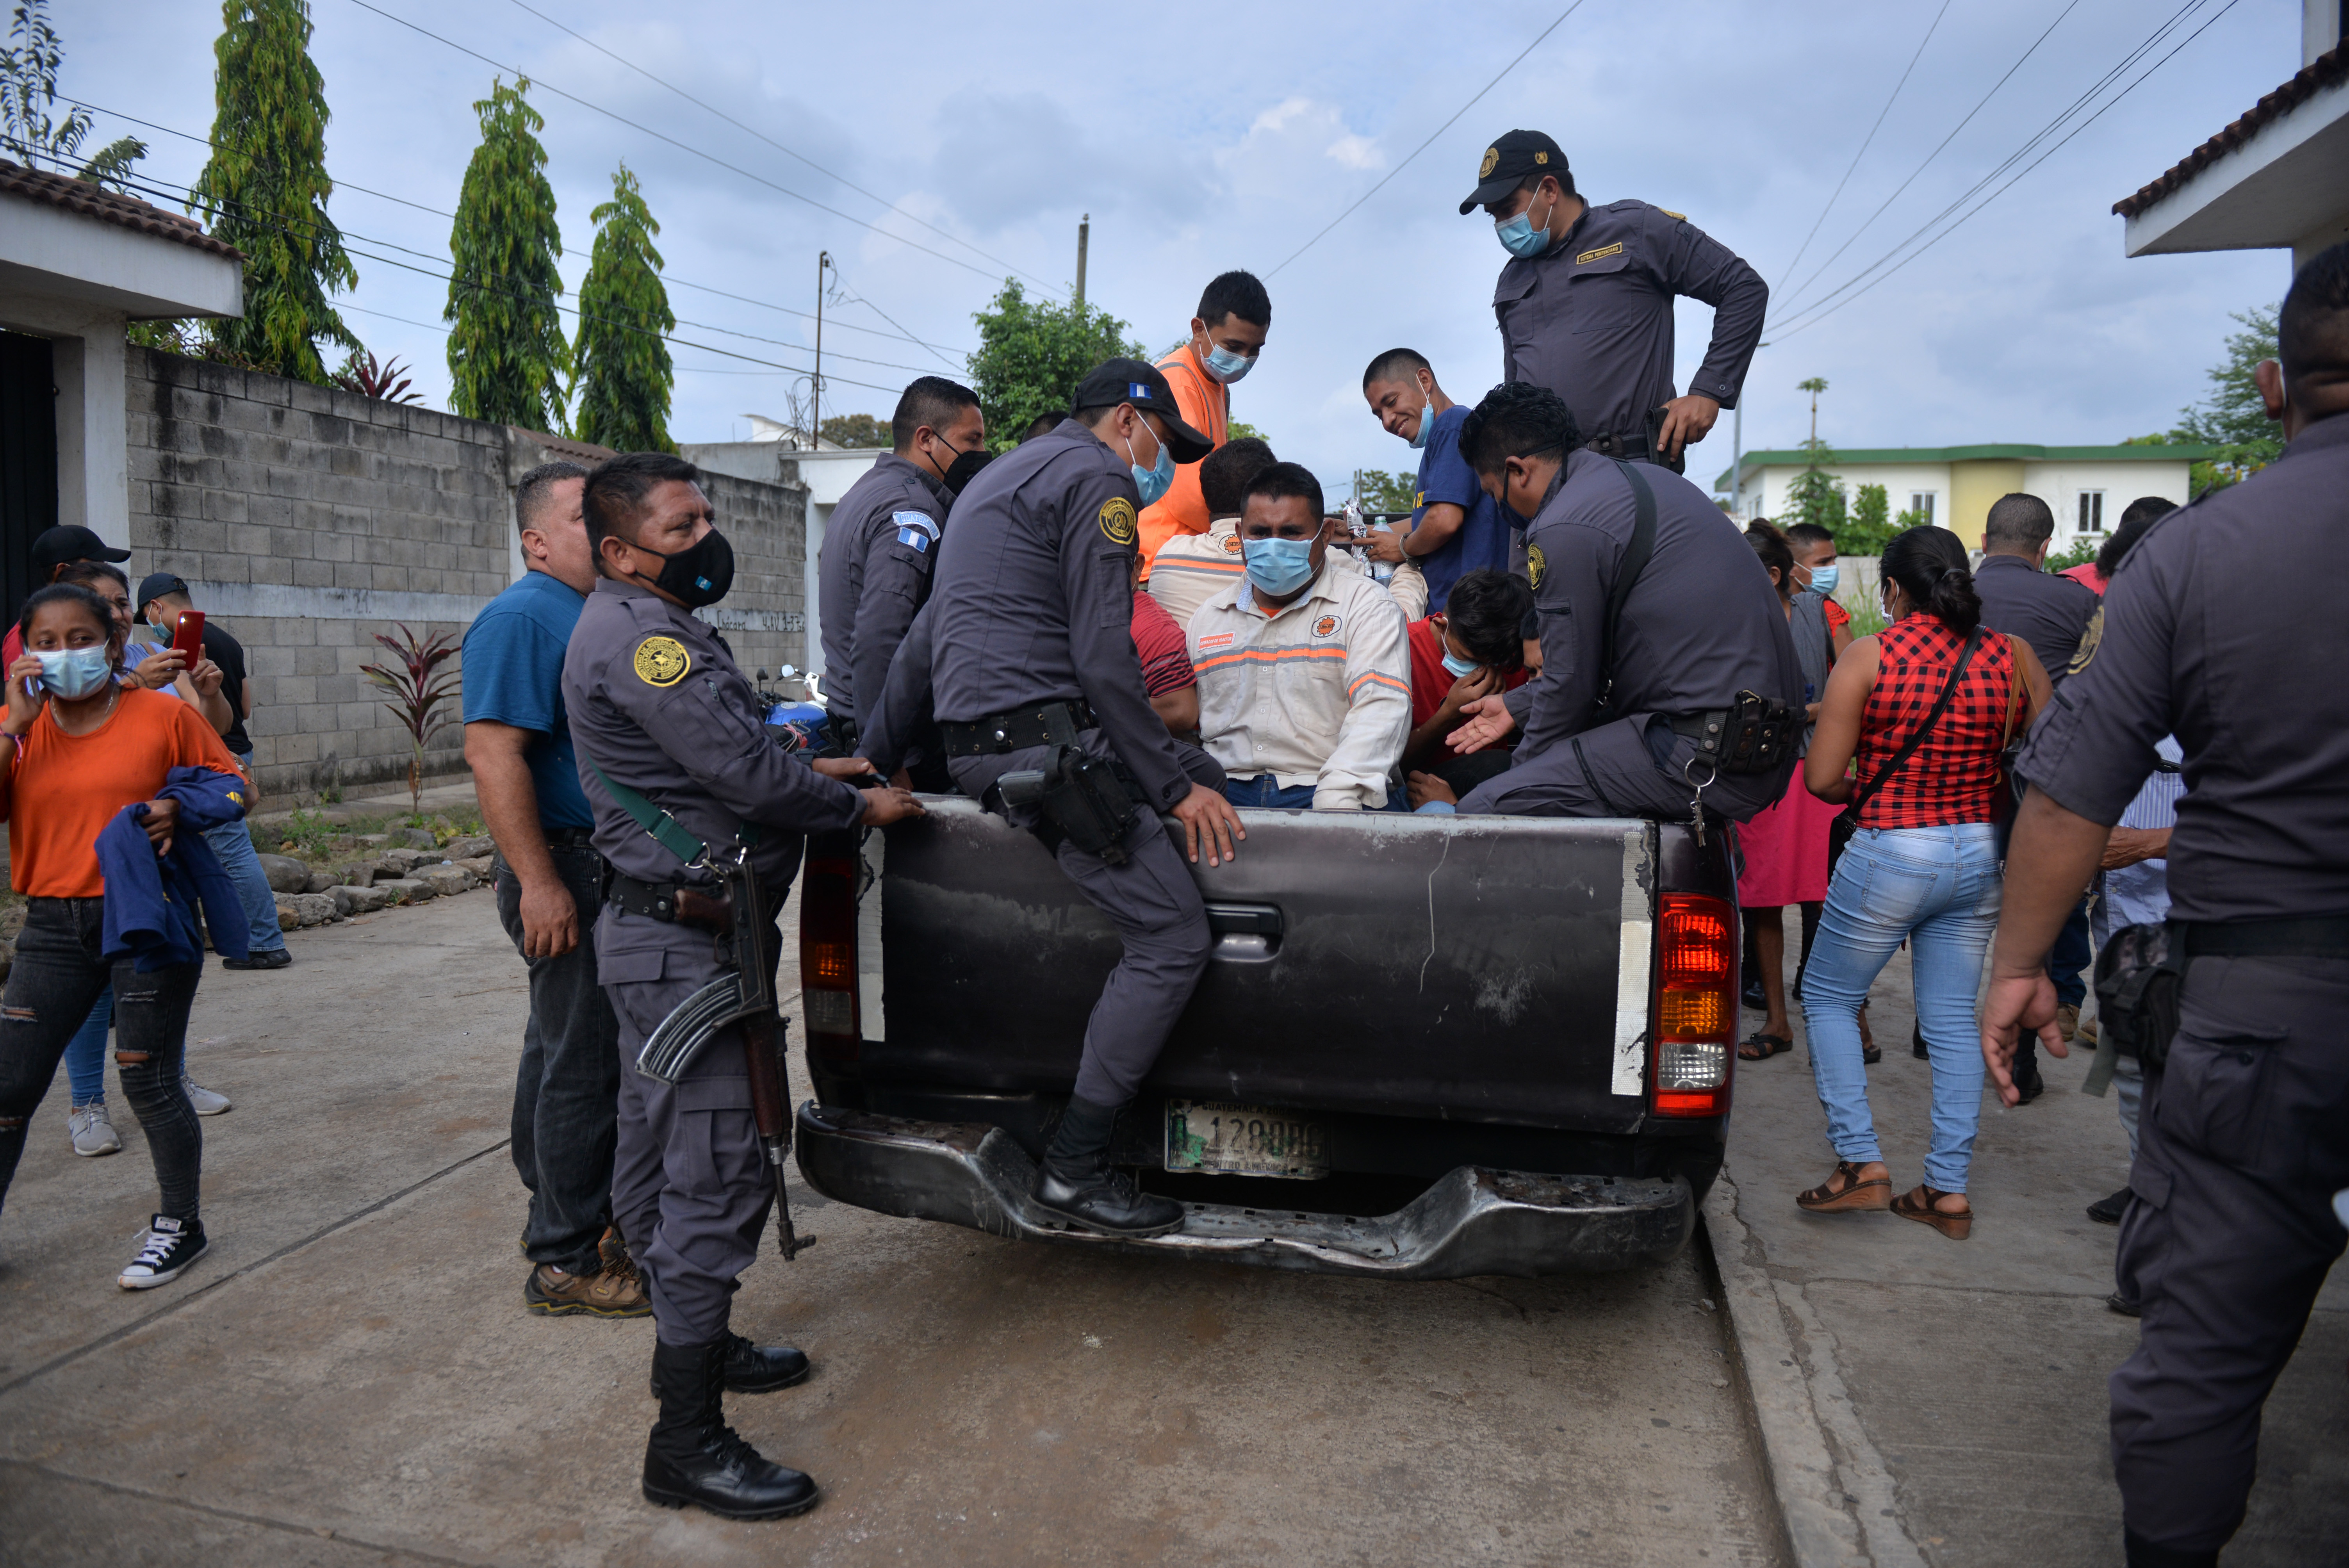 Las 15 personas fueron detenidas durante un operativo antidrogas en una plantación de caña de azúcar en Retalhuleu. (Foto Prensa Libre: Victoria Ruiz)